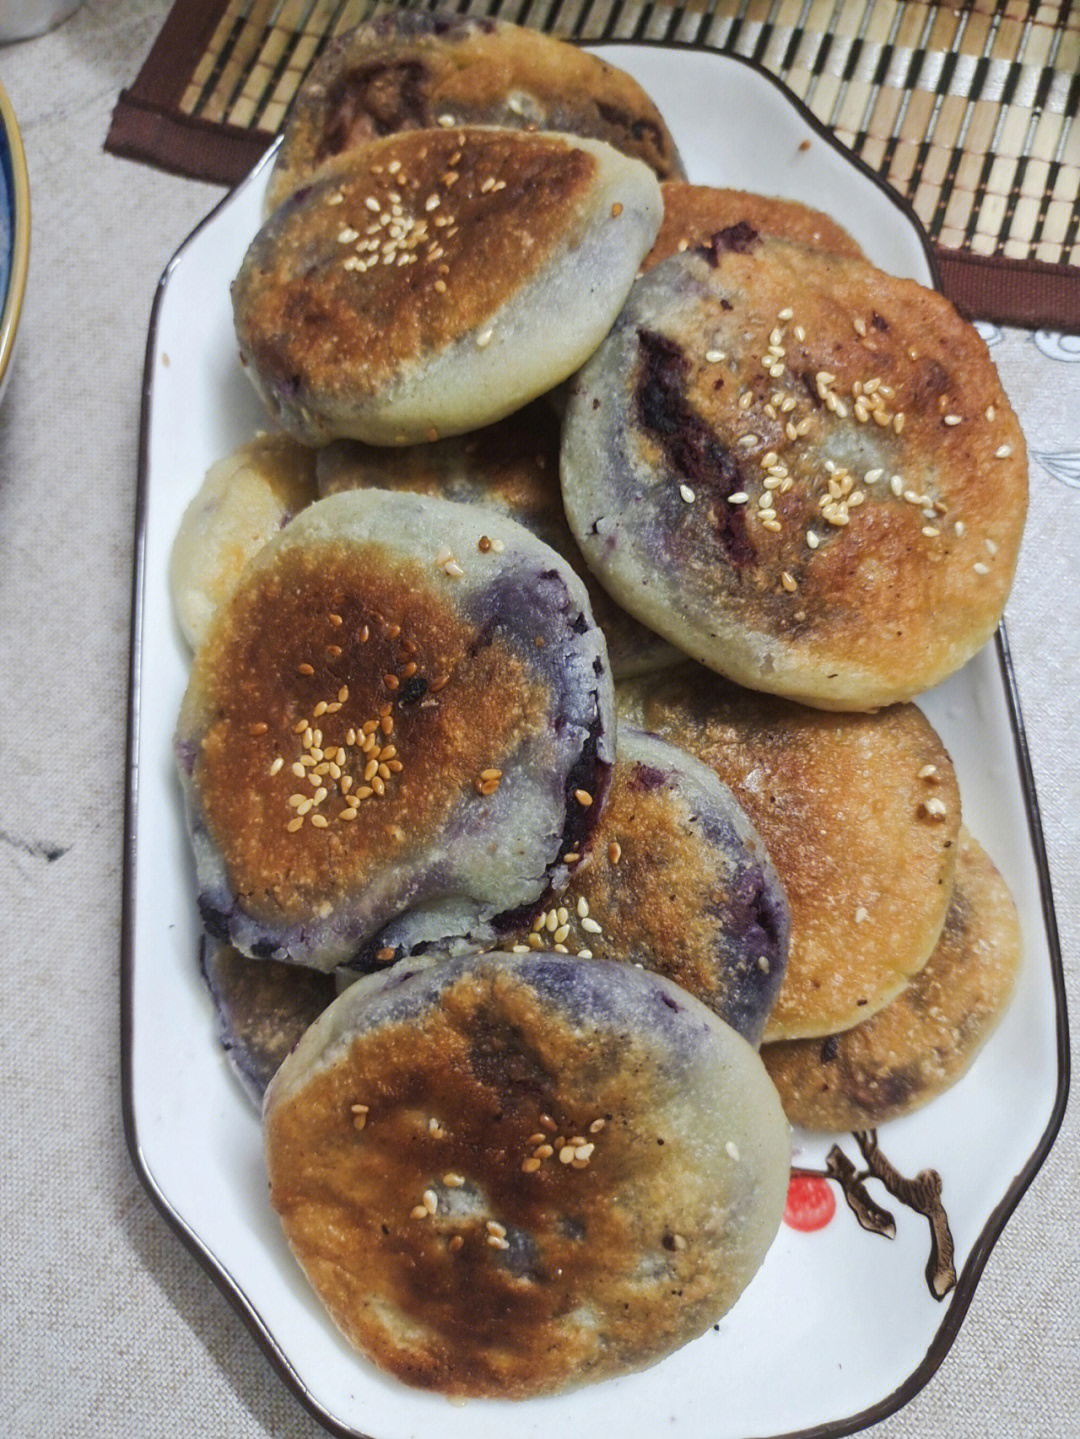 烤紫薯饼串图片